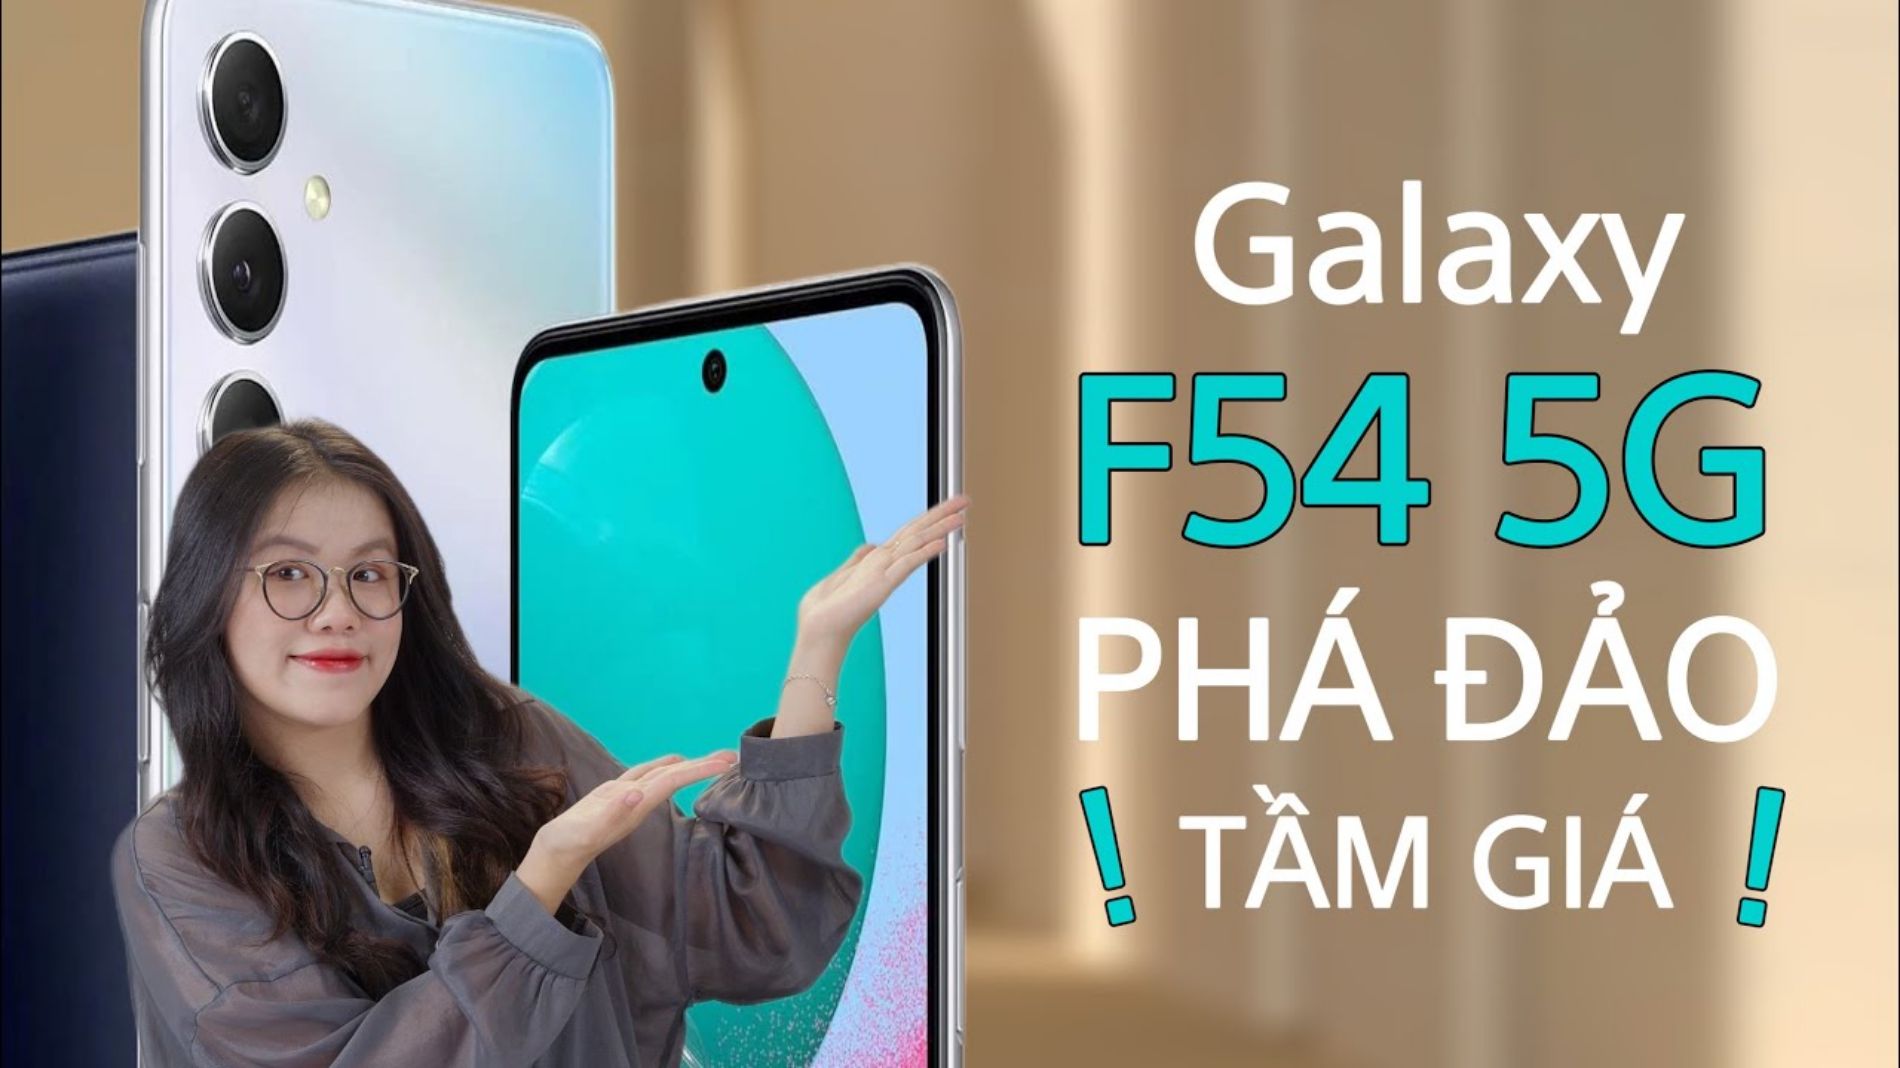 범주 Galaxy F54: giao diện tầm trung nhưng HỆ ĐIỀU HÀNH FLAGSHIP, chỉ 8 TRIỆU !!! 의 그림